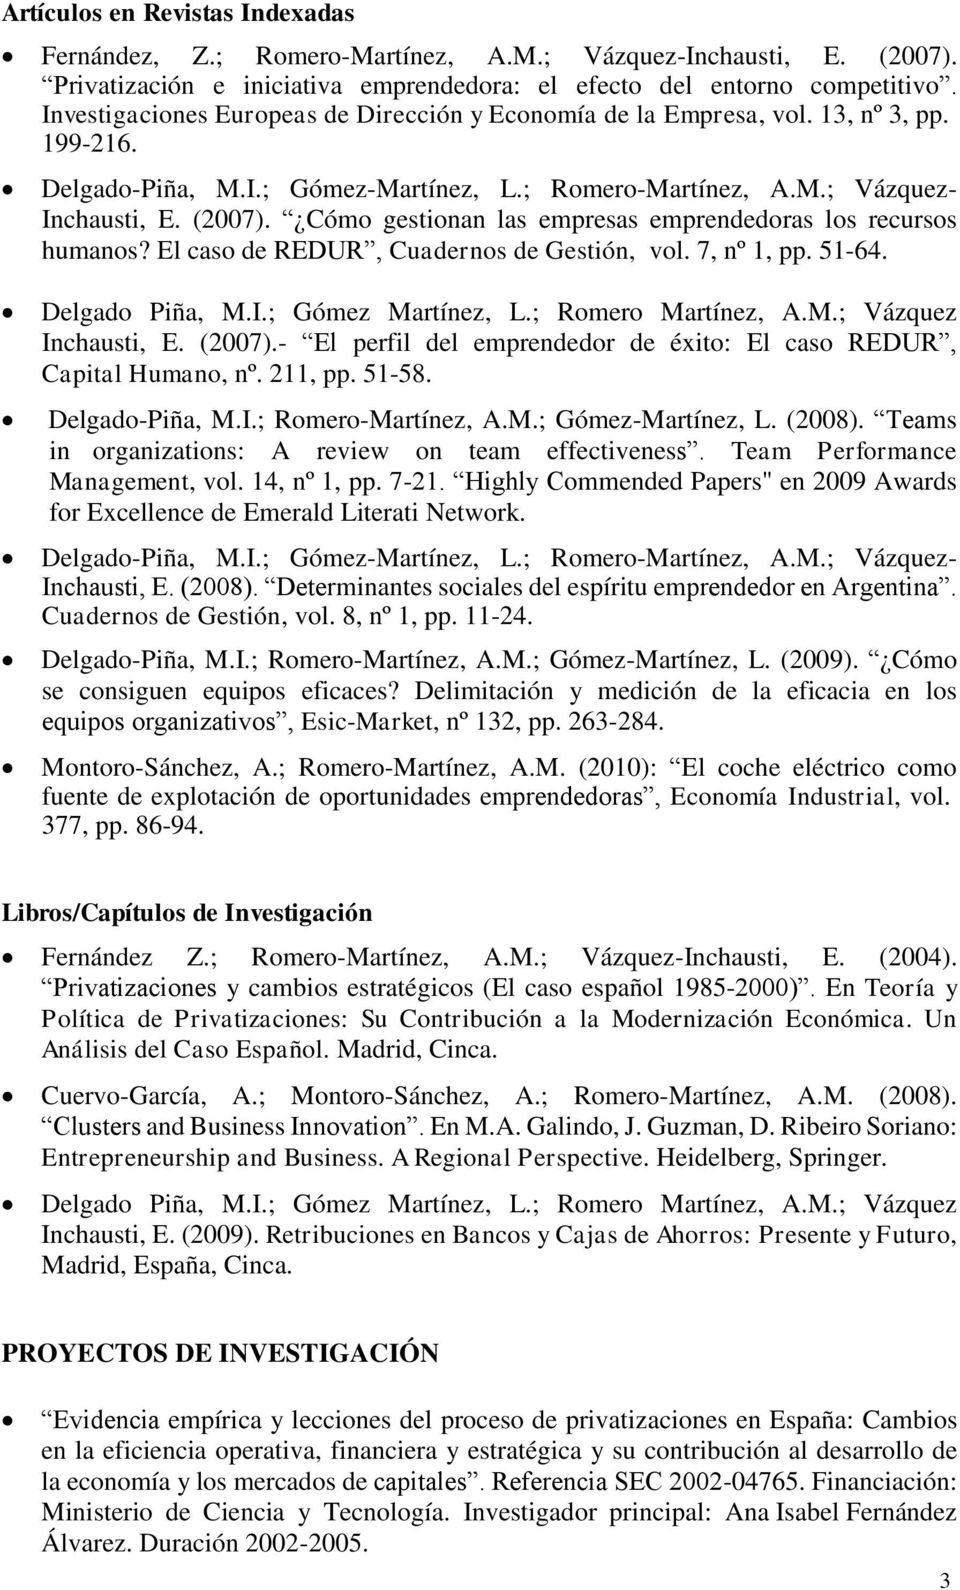 El caso de REDUR, Cuadernos de Gestión, vol. 7, nº 1, pp. 51-64. Delgado Piña, M.I.; Gómez Martínez, L.; Romero Martínez, A.M.; Vázquez Inchausti, E. (2007).